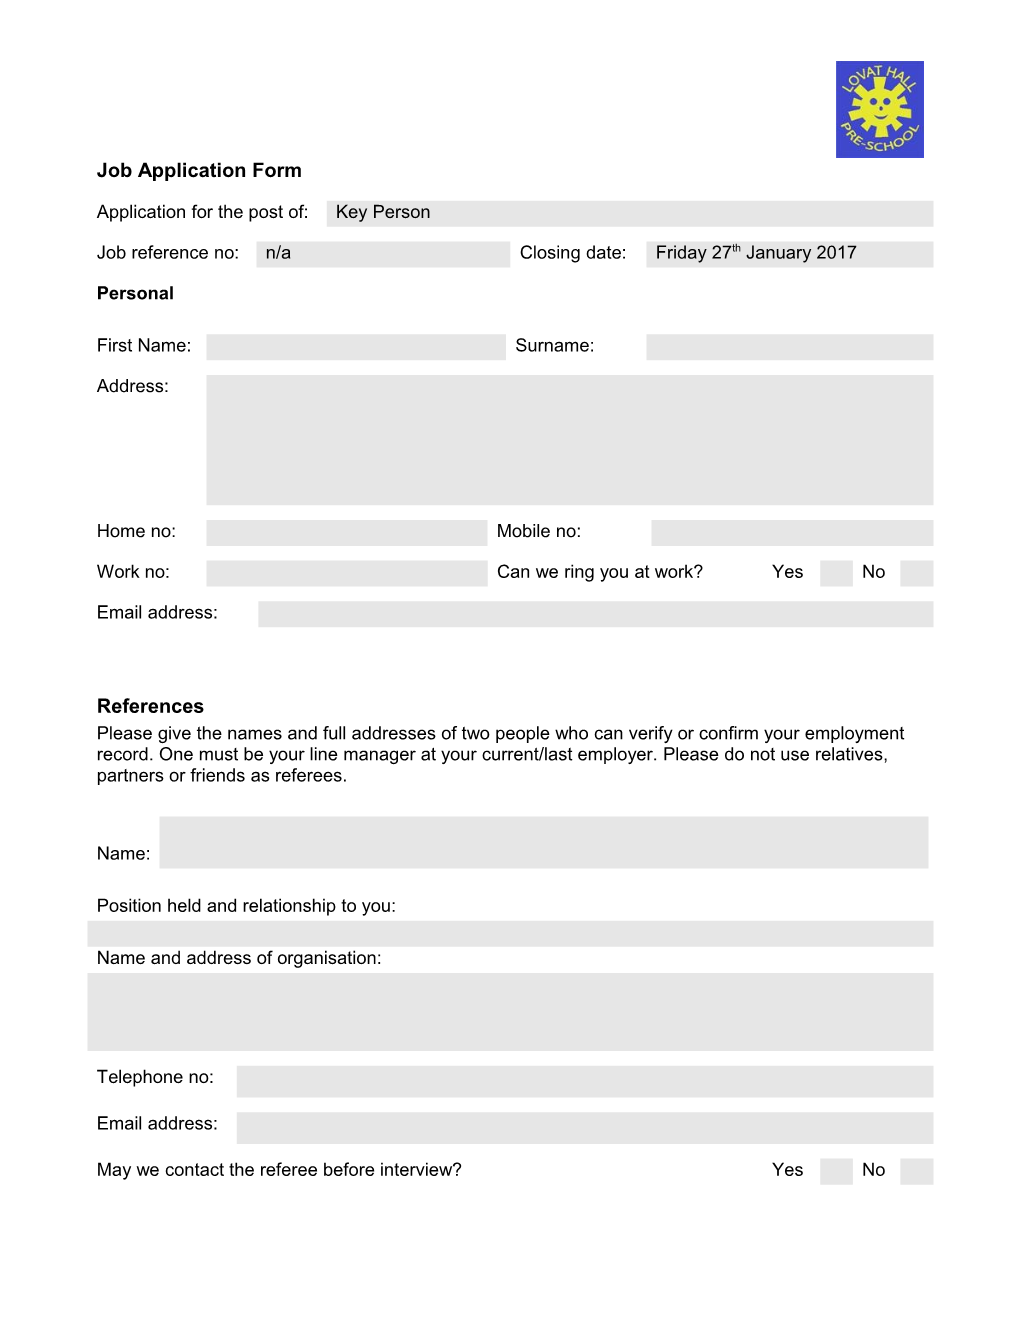 Job Application Form s8